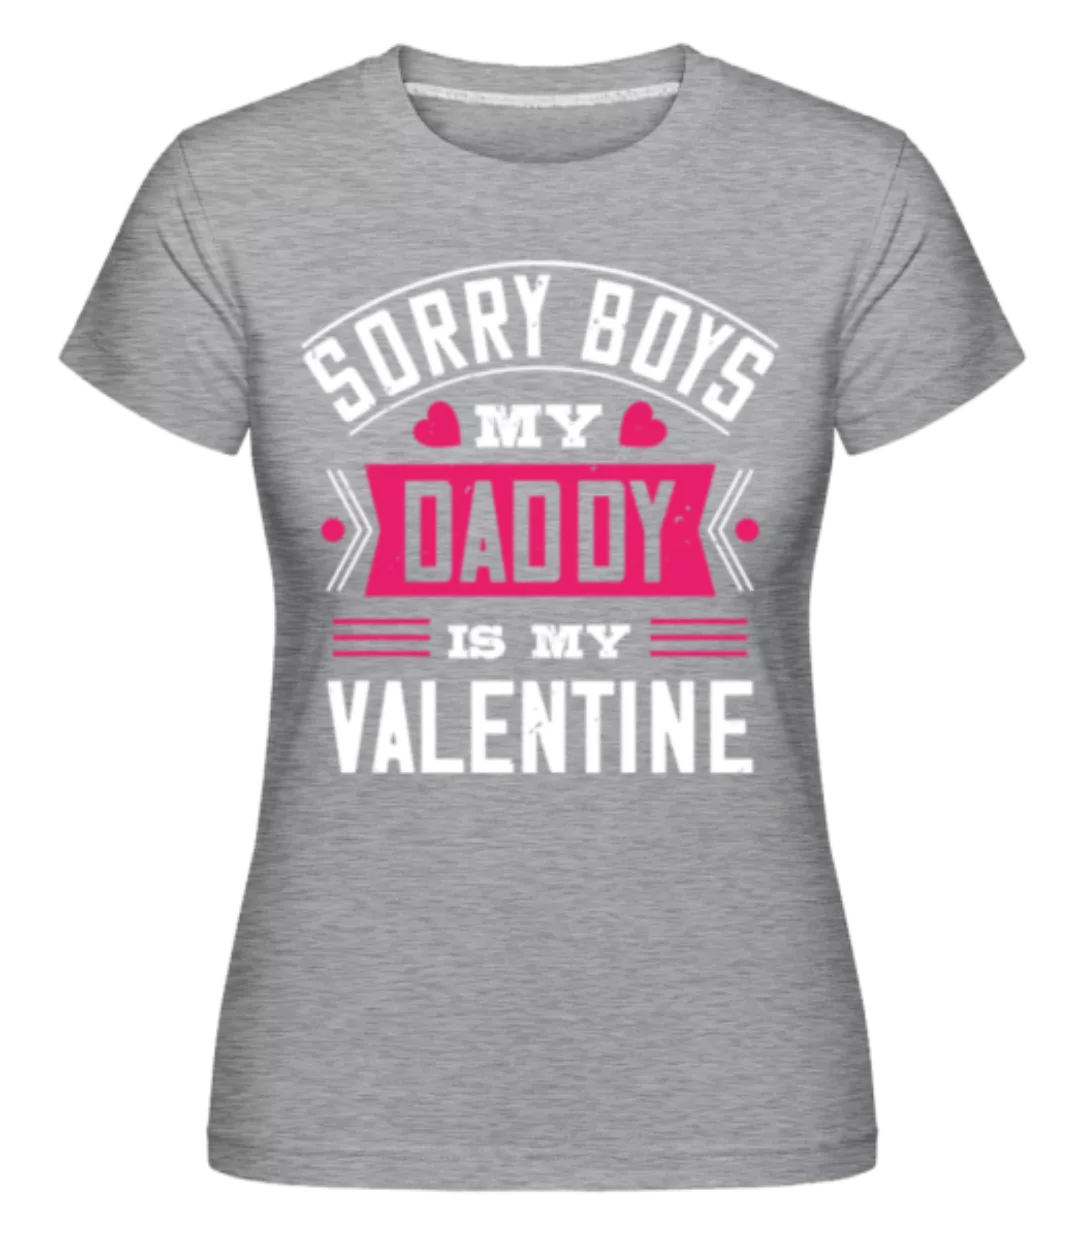 Sorry Boys My Daddy Is My Valentine · Shirtinator Frauen T-Shirt günstig online kaufen